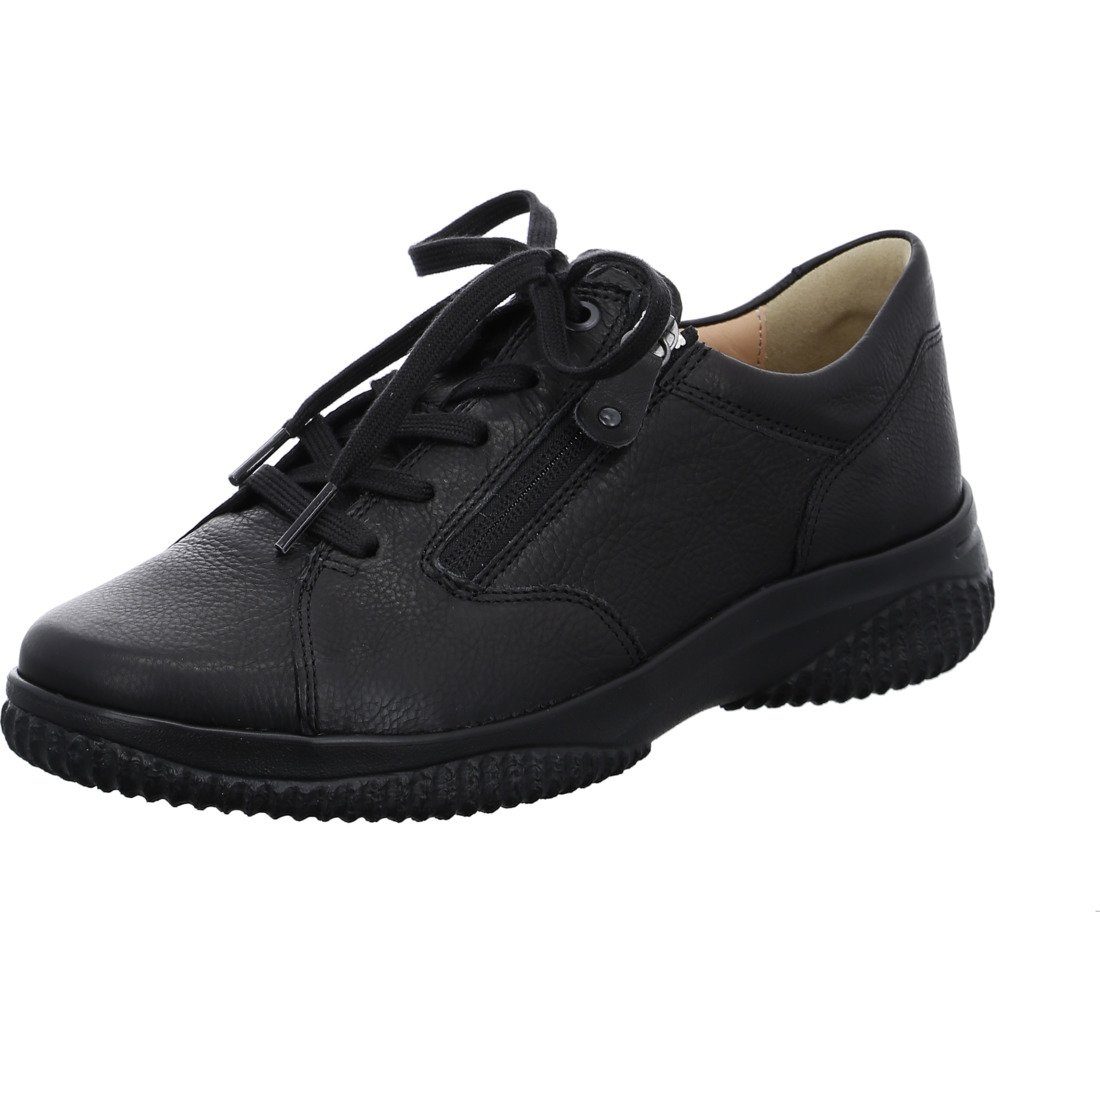 Hartjes Hartjes Schuhe, Schnürschuh Ethno - Nubuk Damen Schnürschuh schwarz 047508